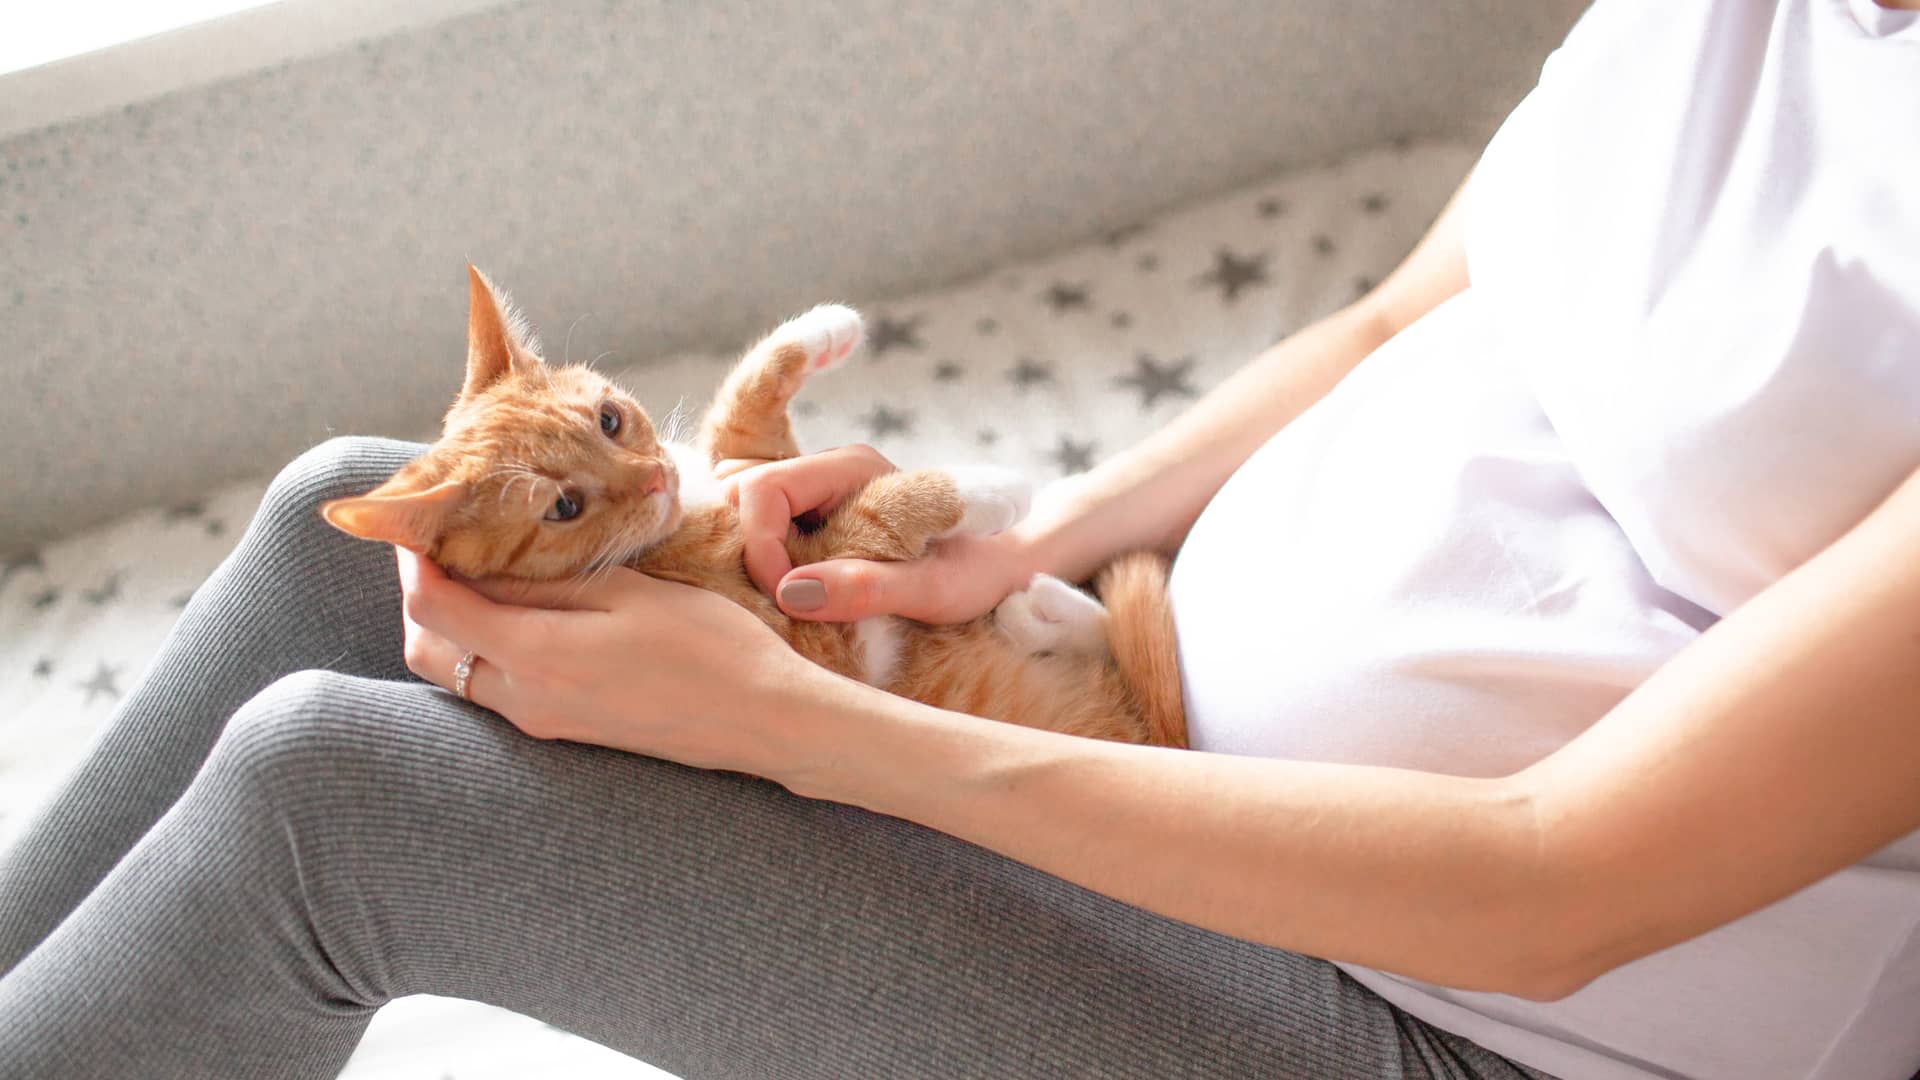 mujer embarazada acariciando a un gato que no tiene toxoplasmosis